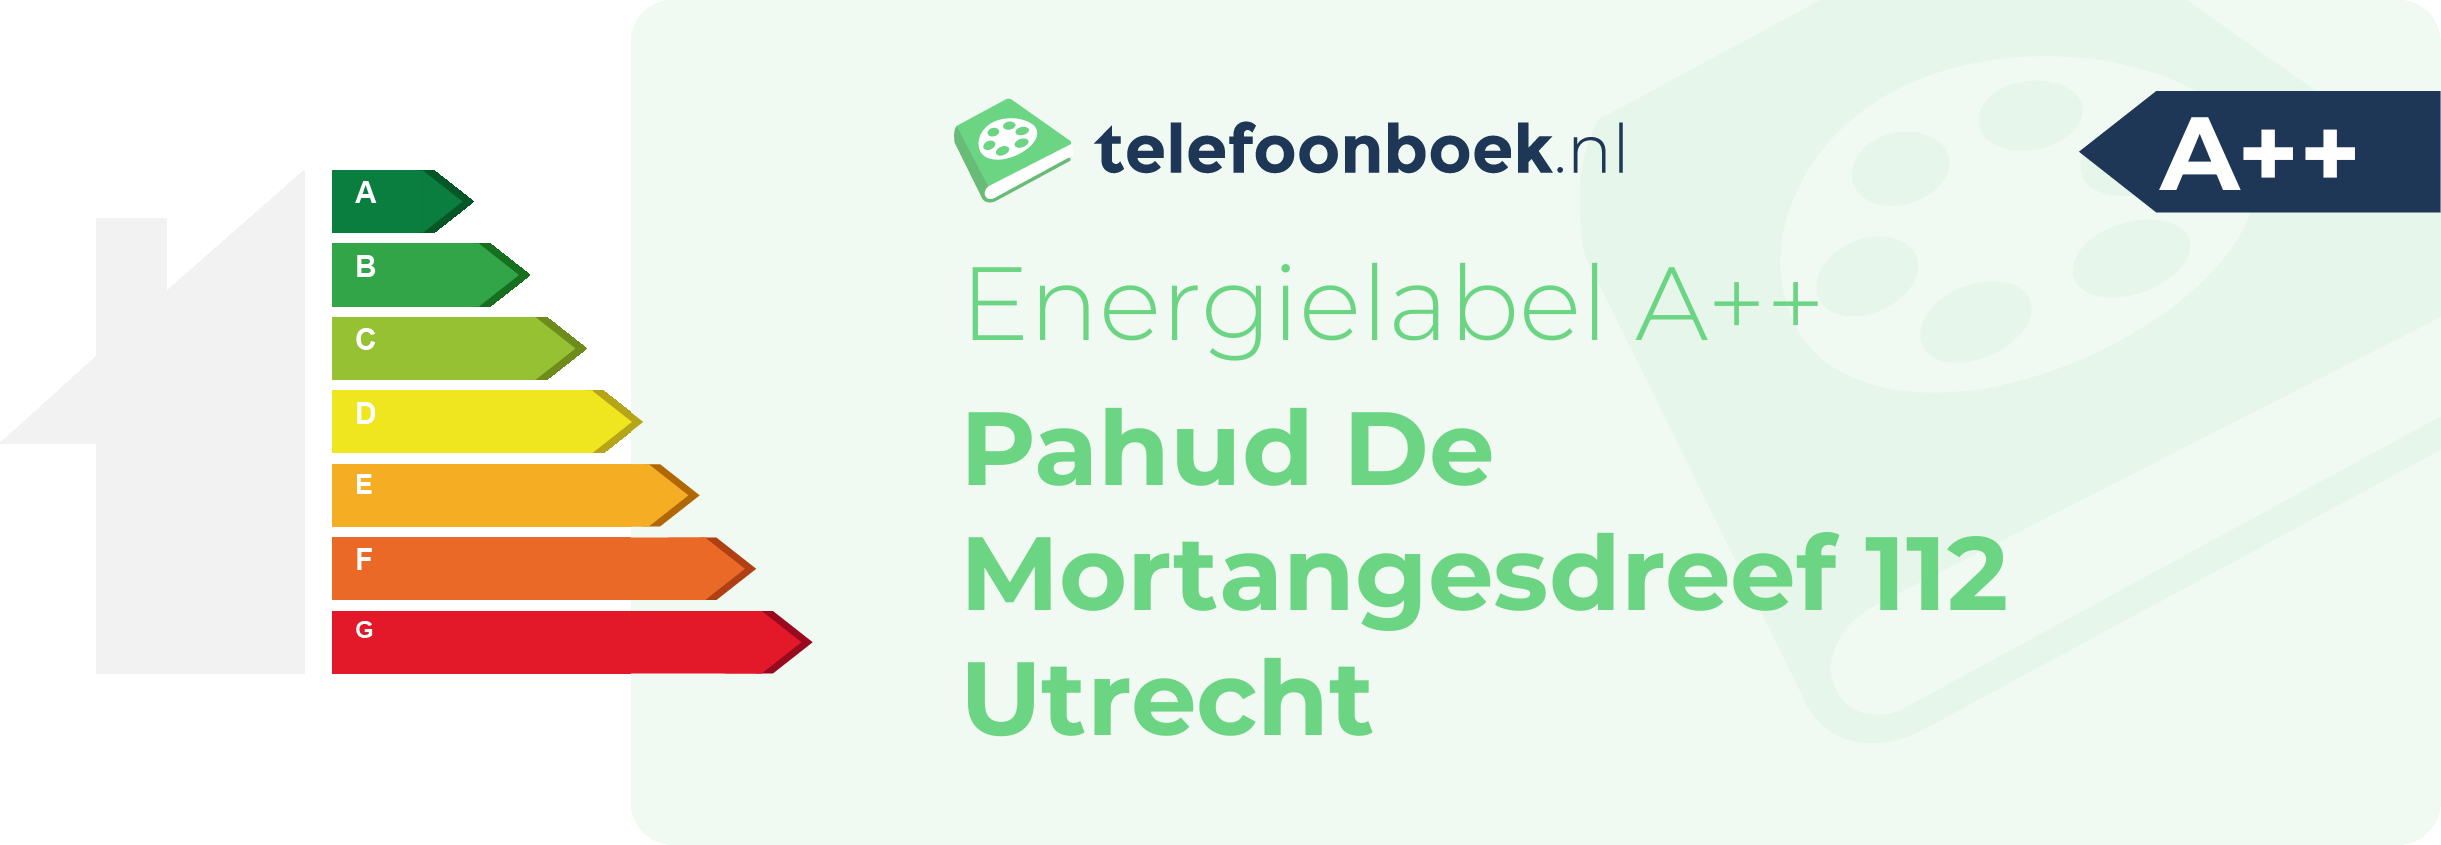 Energielabel Pahud De Mortangesdreef 112 Utrecht